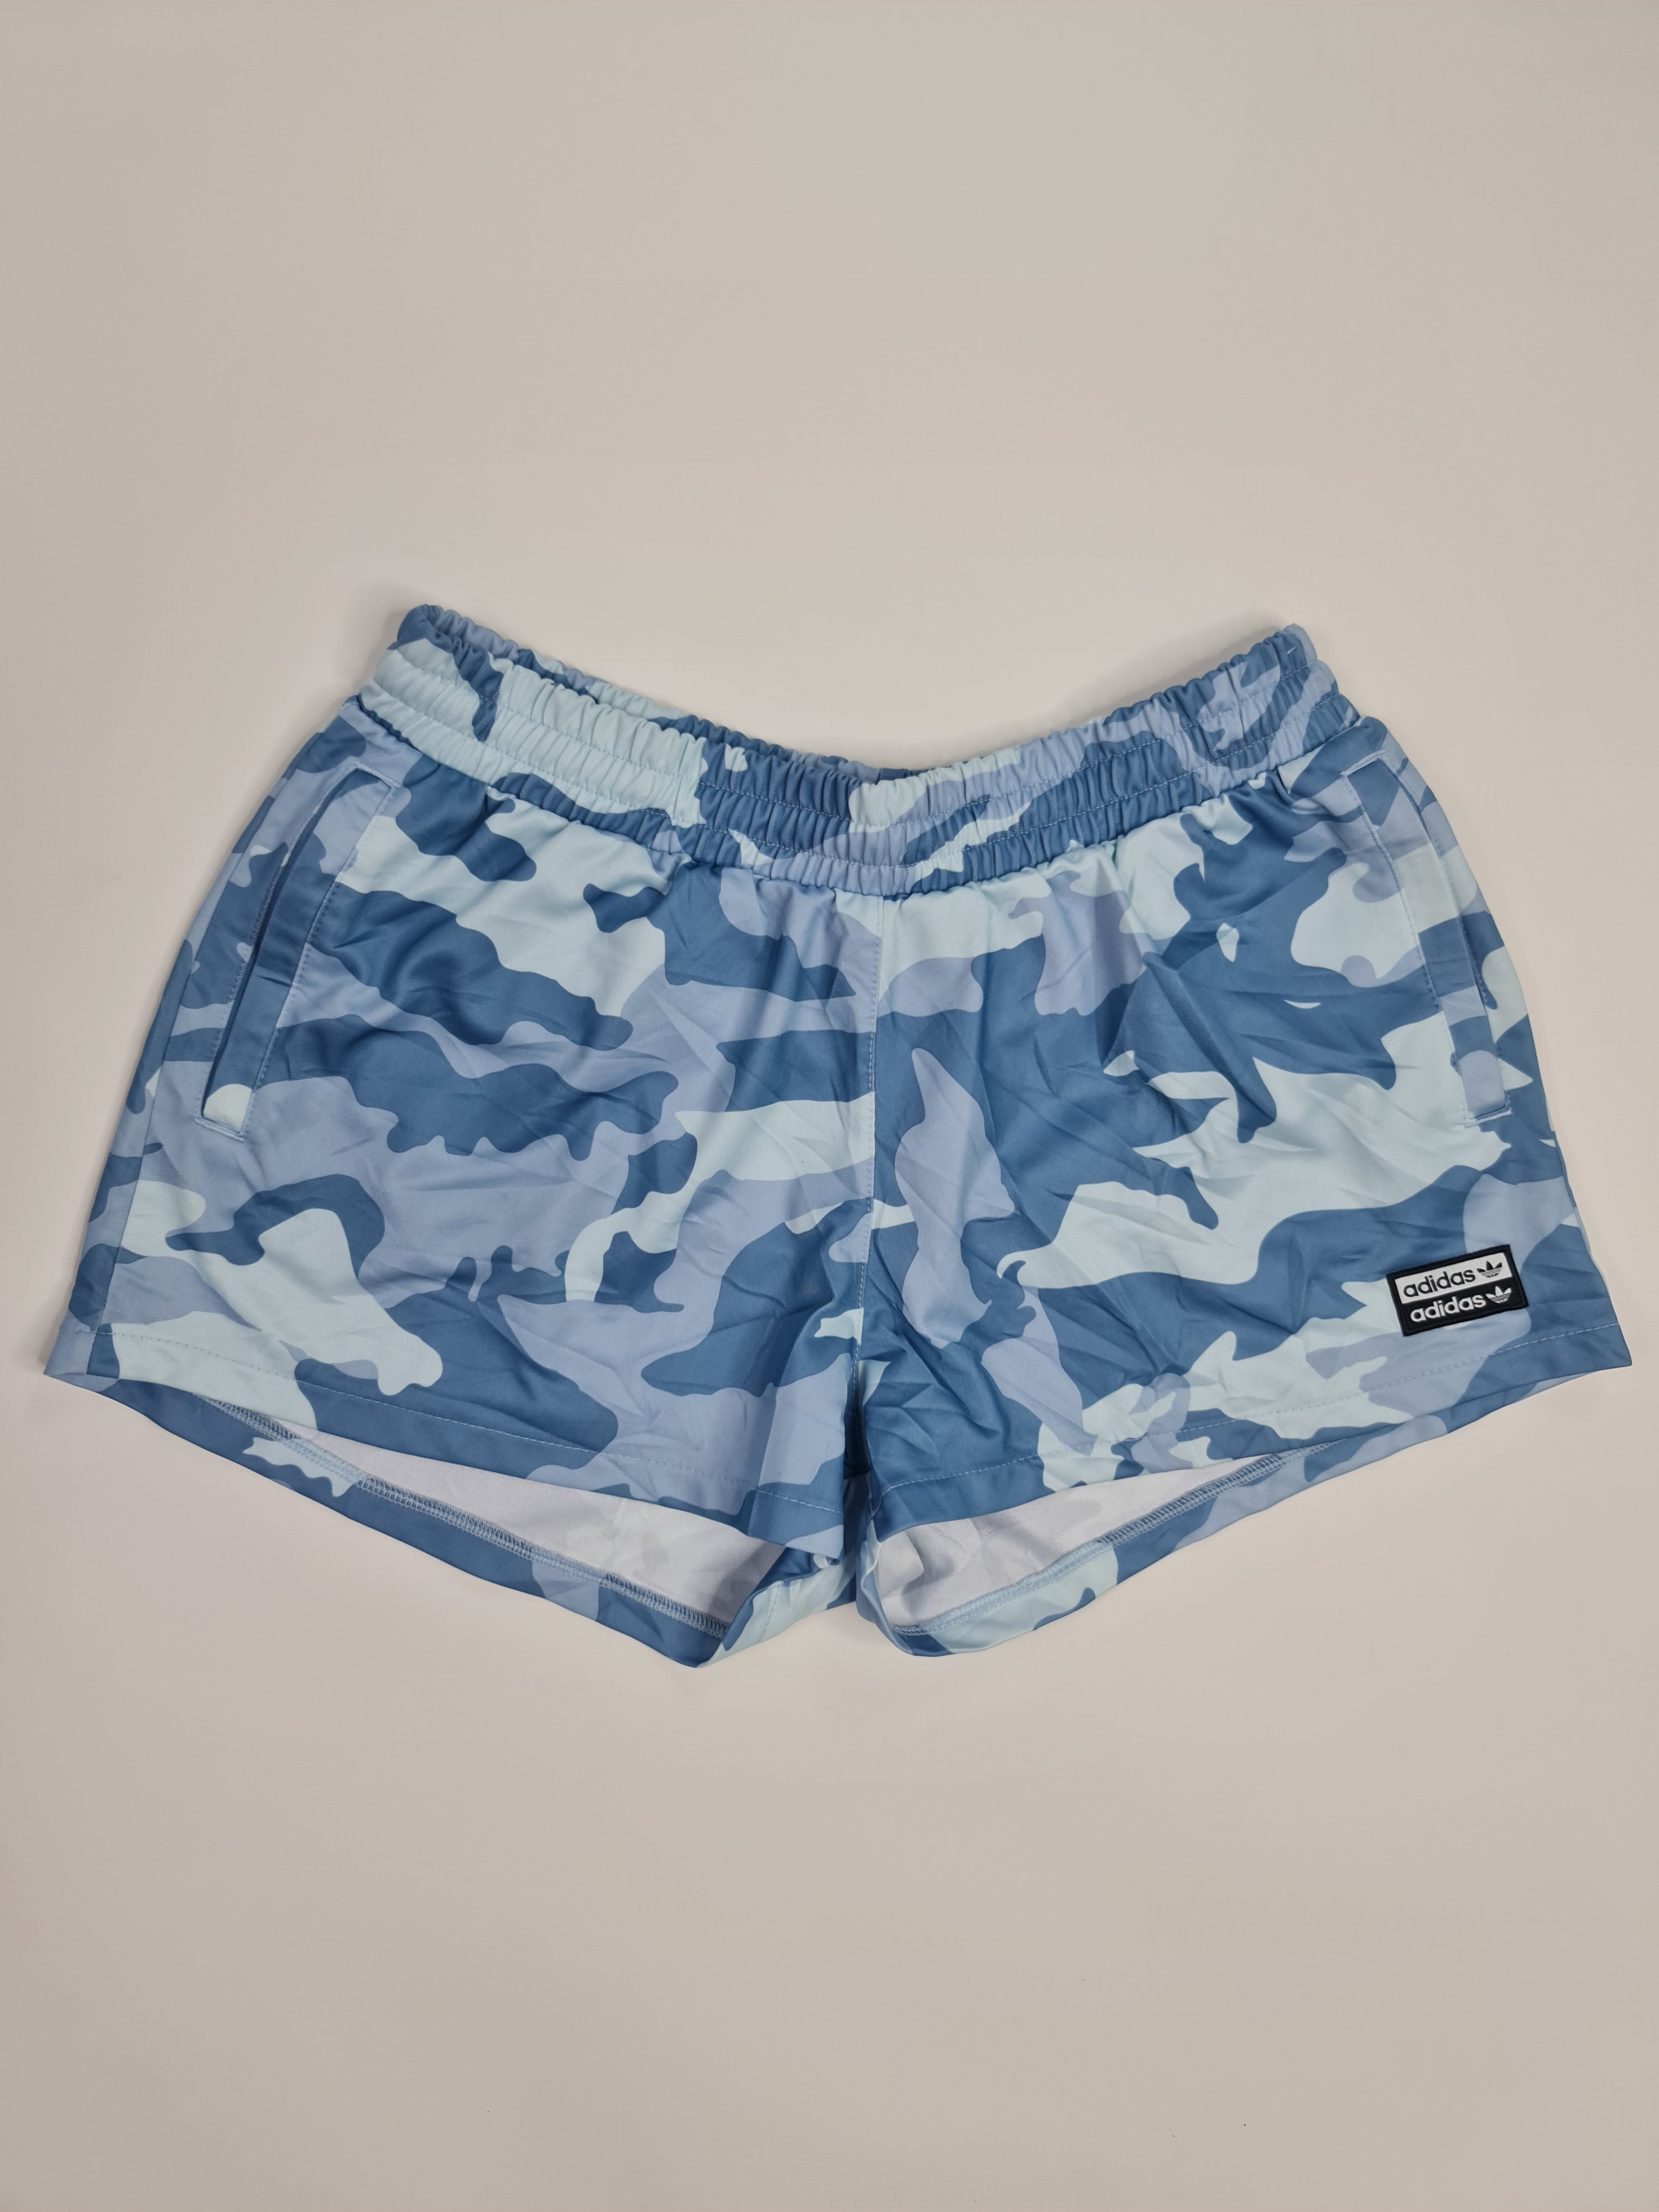 Pantalones cortos deportivos marca Adidas - (Talla: L/G) Azul